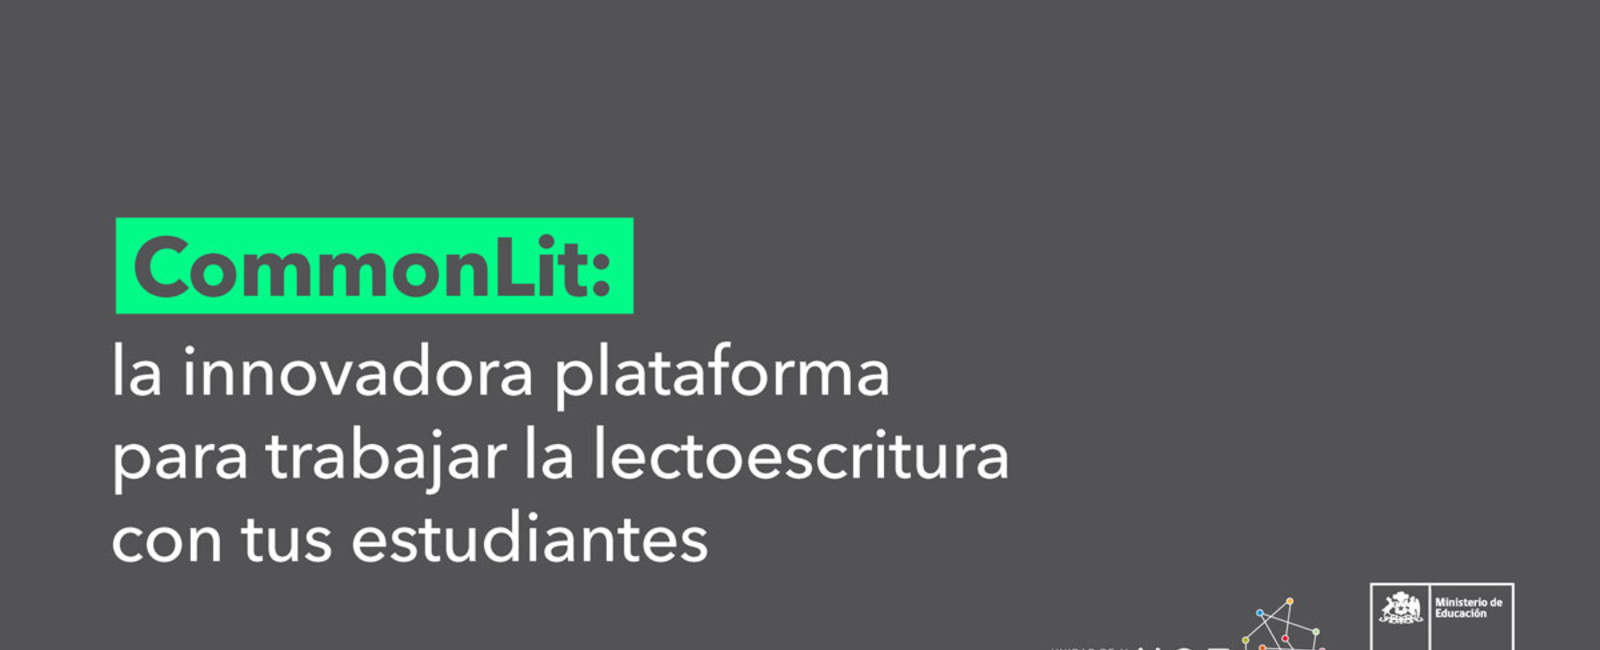 CommonLit: la innovadora plataforma para trabajar la lectoescritura con tus estudiantes